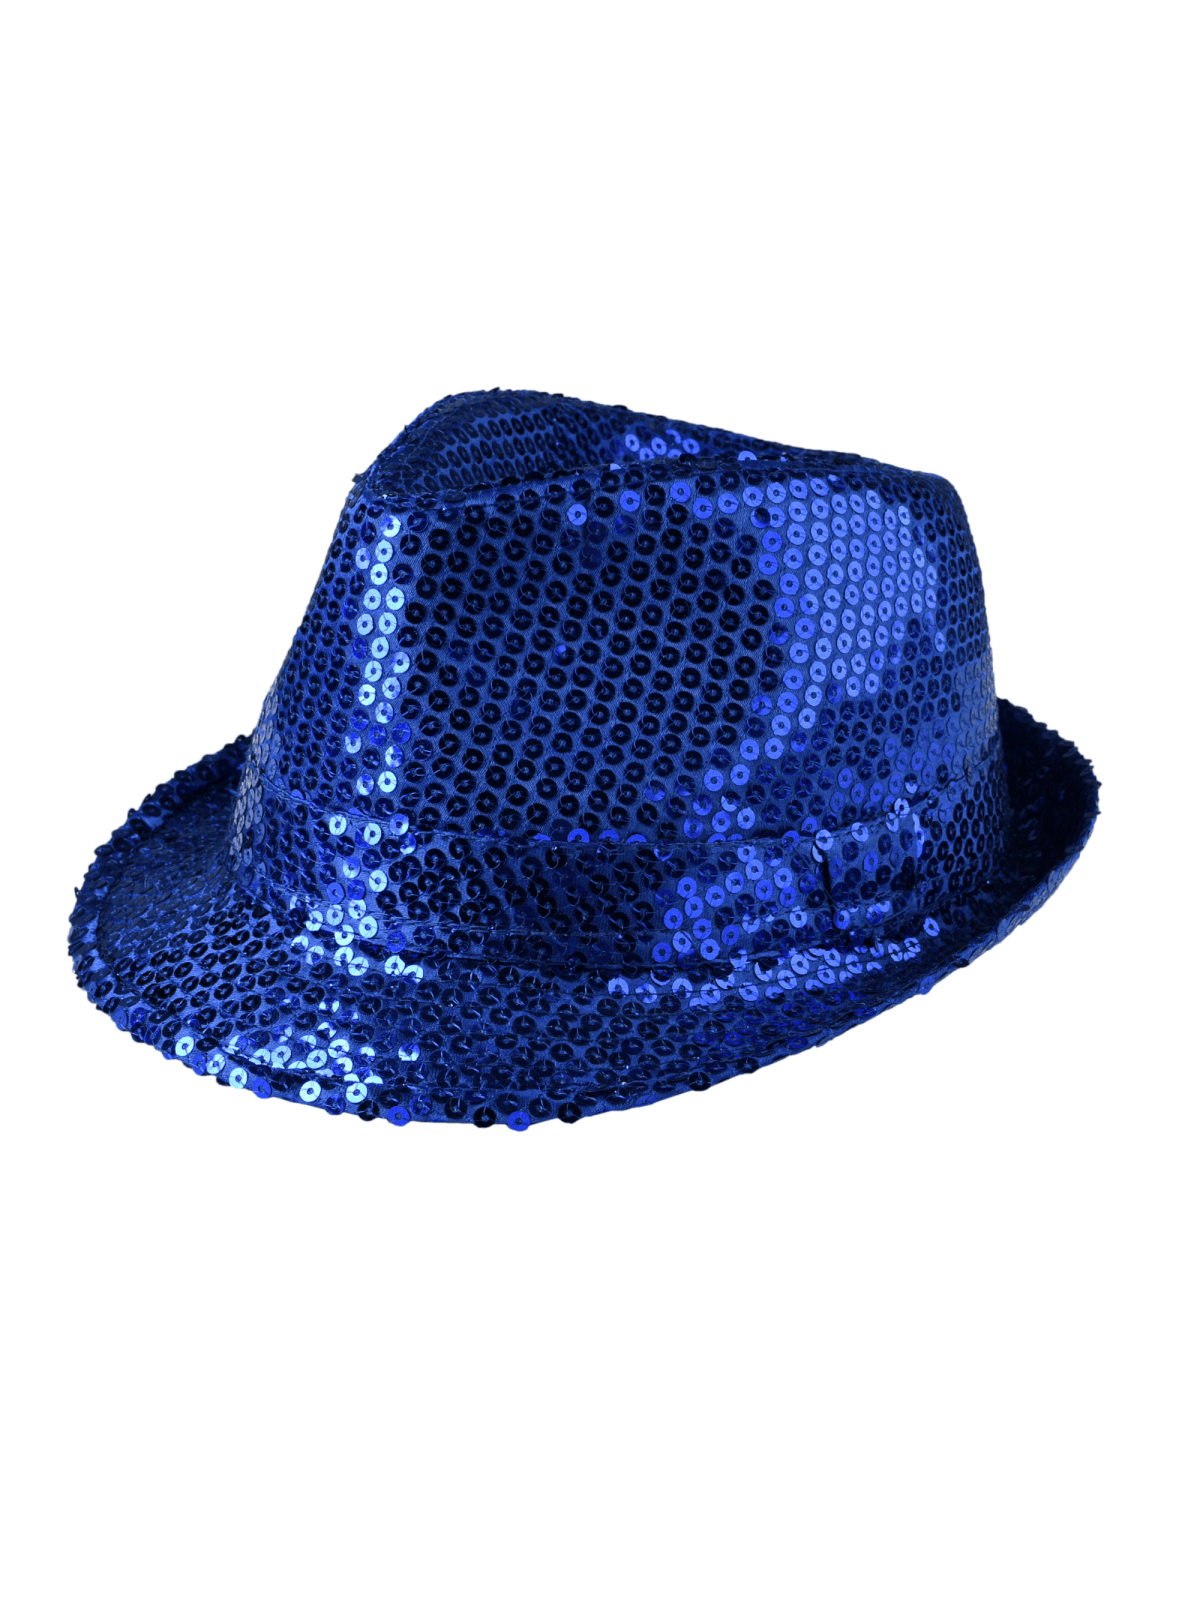 Синяя шляпа-федора с пайетками, синий синяя с пайетками и люрексом двойная 3101fj индиго